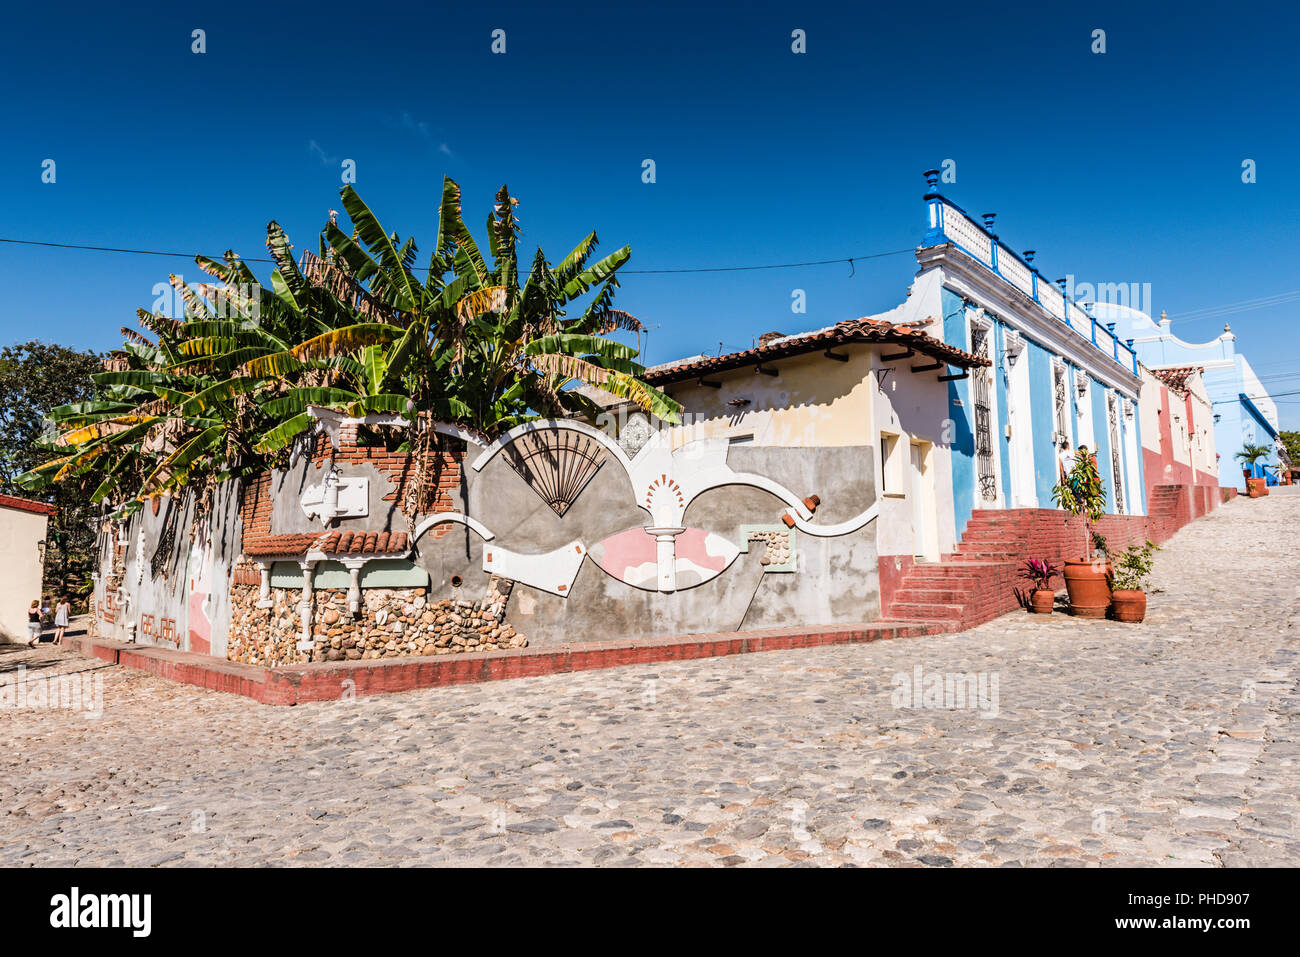 Sancti Spiritus, Cuba / 15 mars 2017 : l'art de mur sur la façade de l'immeuble dans l'une des plus anciennes colonies européennes cubain. Banque D'Images